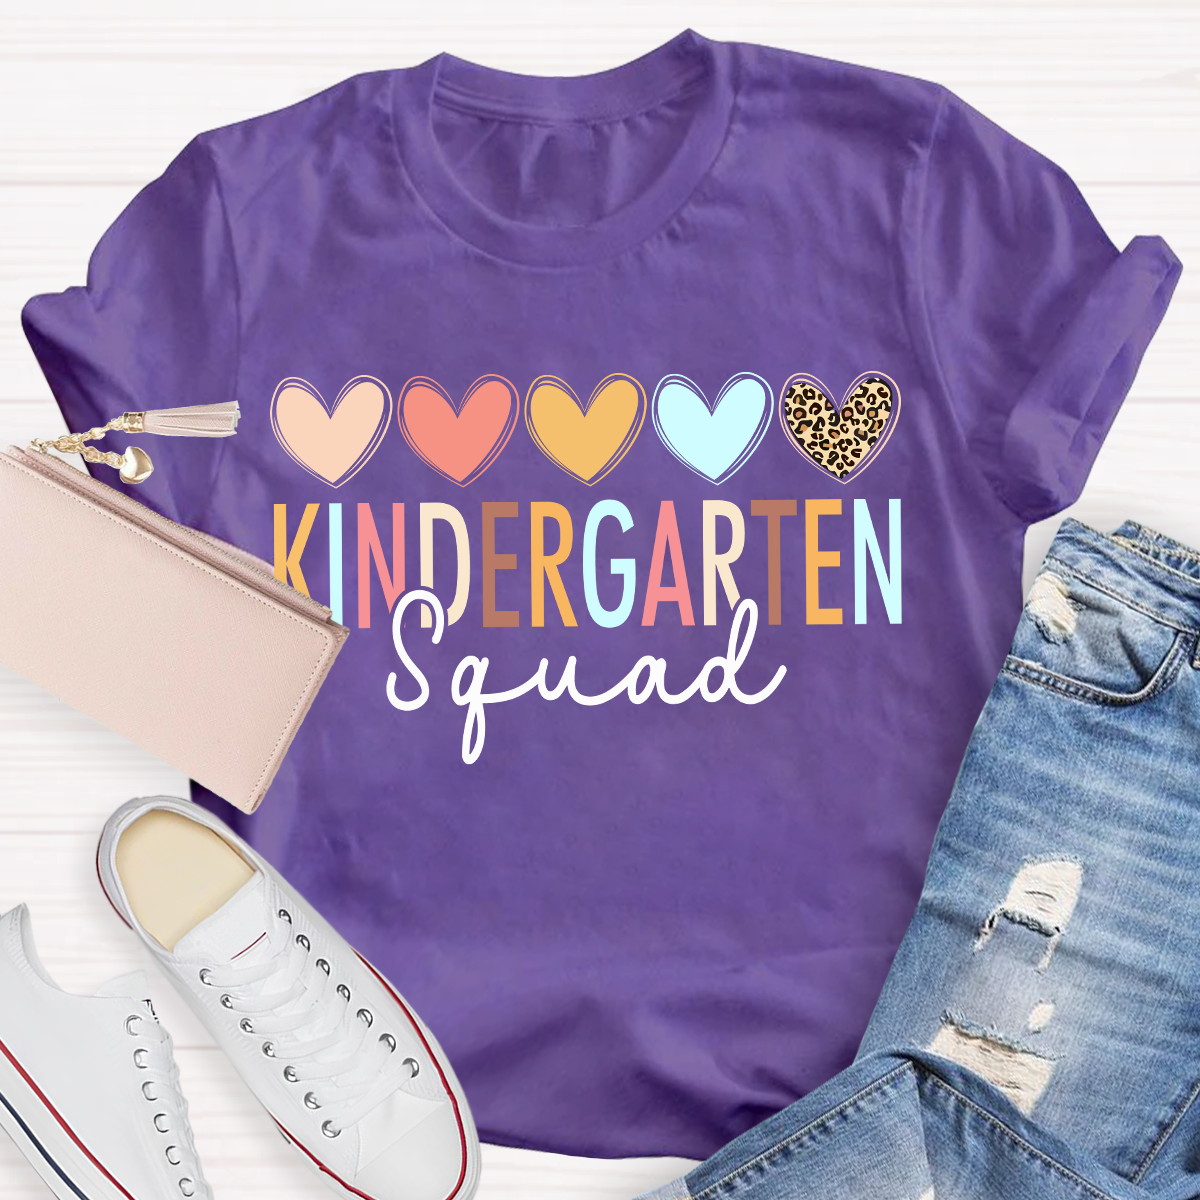 Kindergarten Squad Teacher Graphic Shirt